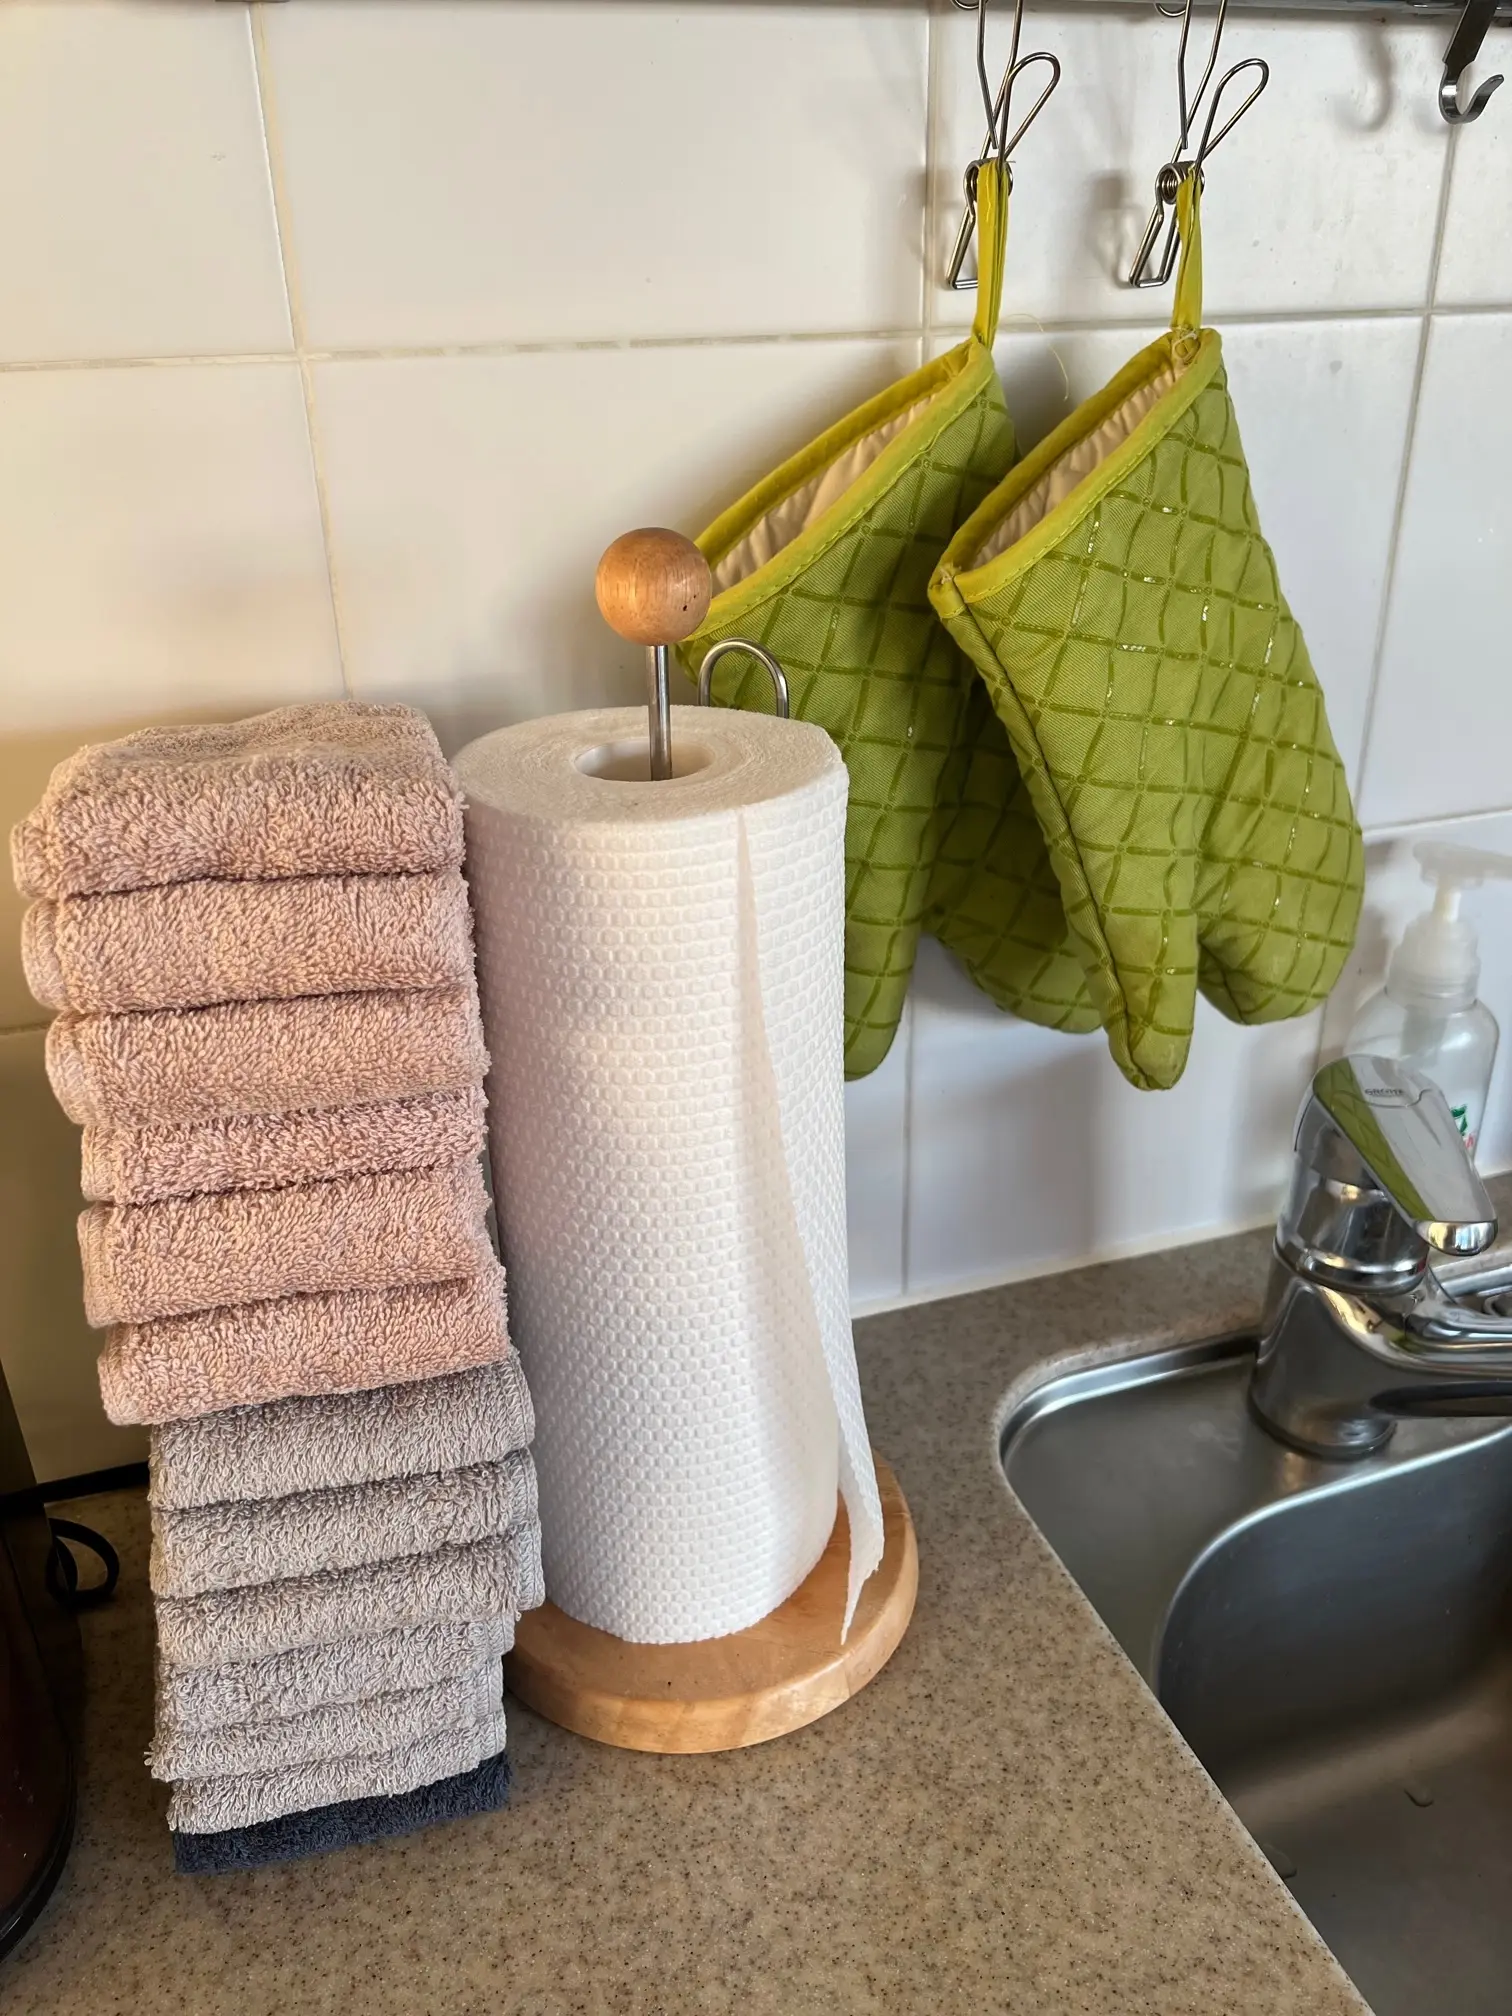 キッチンの脇と洗面所にハンドタオルをドーンと積み上げ、手が濡れるたびに乾いたタオルを次々に使うように。